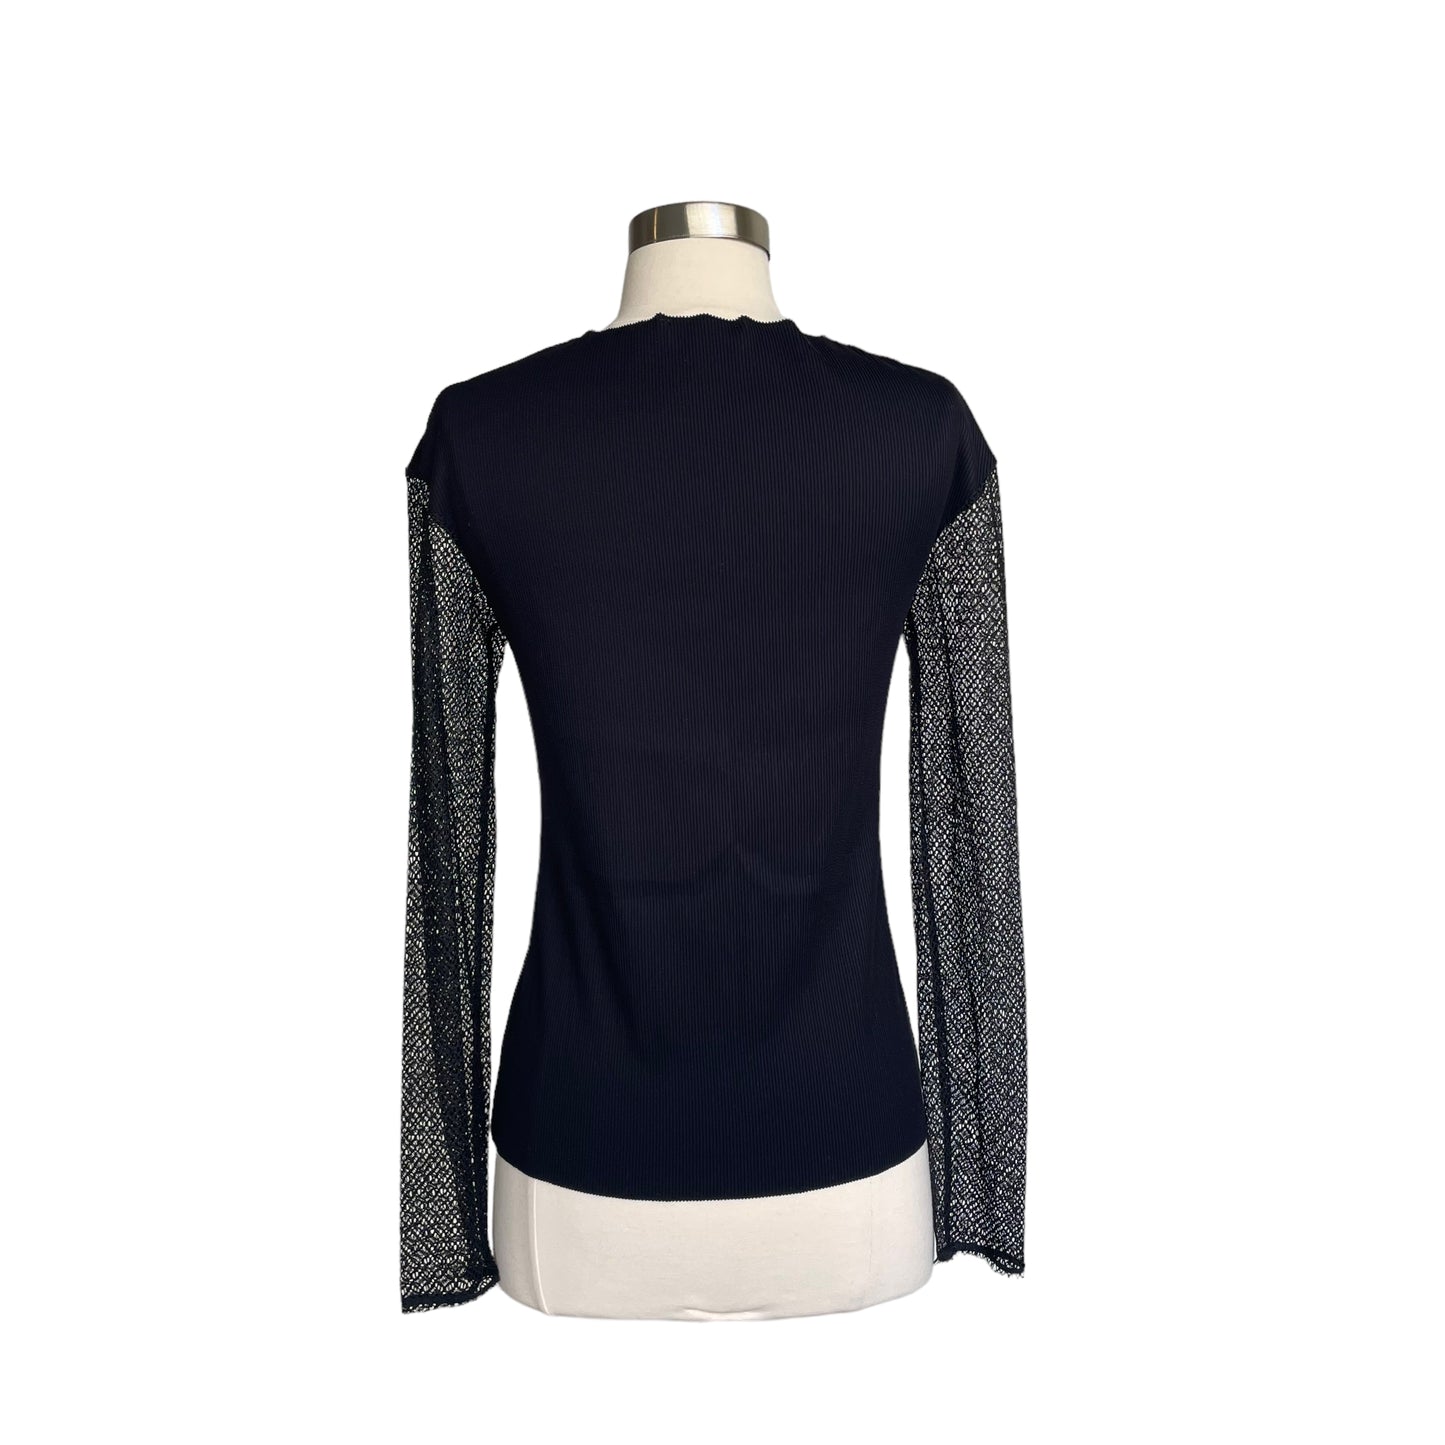 Black Semi Sheer Long Sleeve Shirt - S